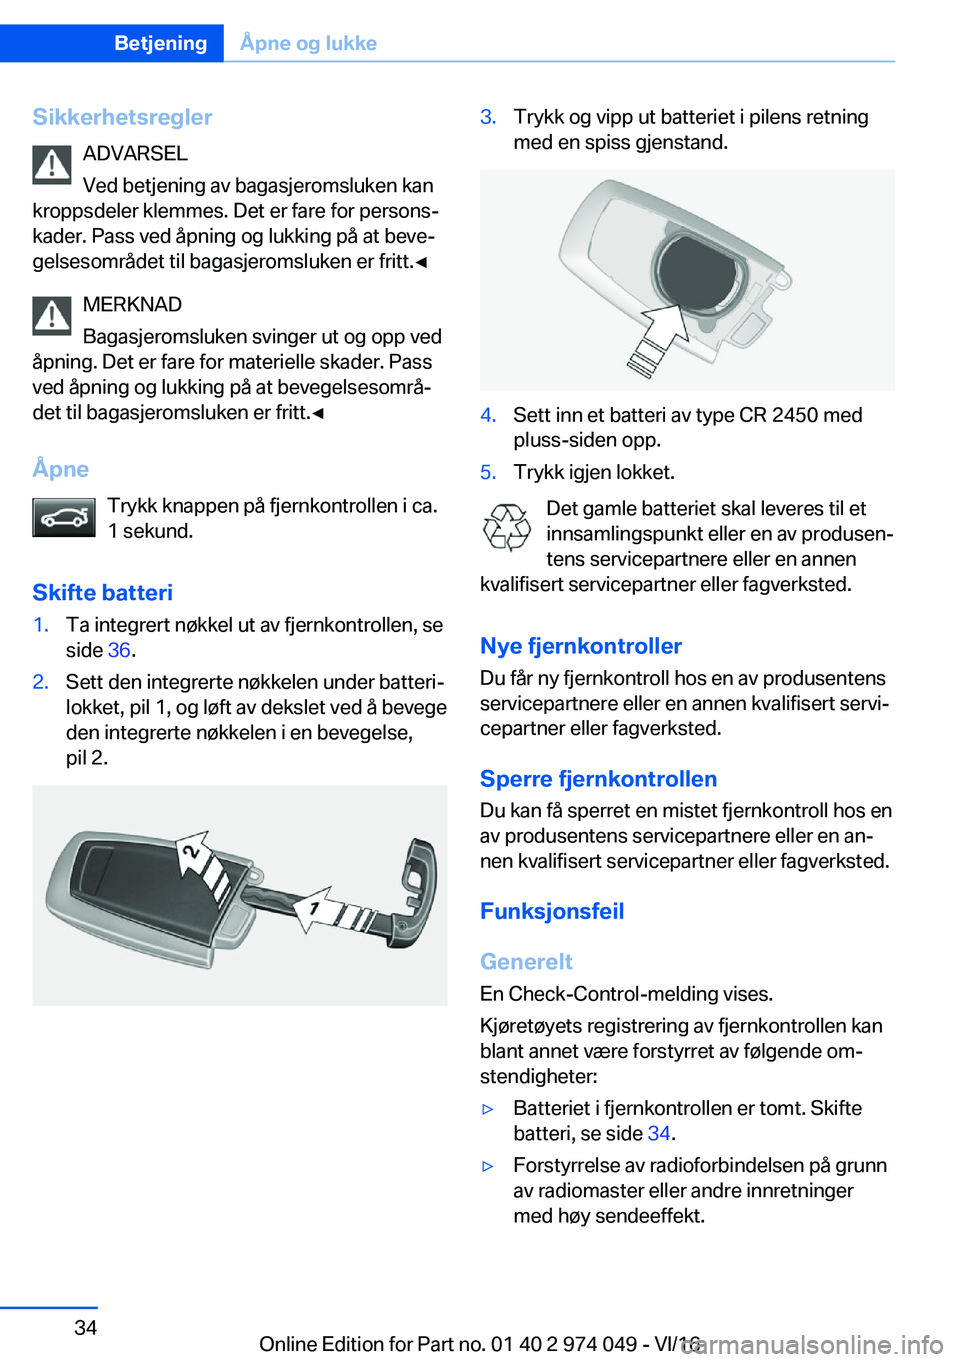 BMW M3 2017  InstruksjonsbØker (in Norwegian) �S�i�k�k�e�r�h�e�t�s�r�e�g�l�e�r�A�D�V�A�R�S�E�L
�V�e�d� �b�e�t�j�e�n�i�n�g� �a�v� �b�a�g�a�s�j�e�r�o�m�s�l�u�k�e�n� �k�a�n
�k�r�o�p�p�s�d�e�l�e�r� �k�l�e�m�m�e�s�.� �D�e�t� �e�r� �f�a�r�e� �f�o�r� �p